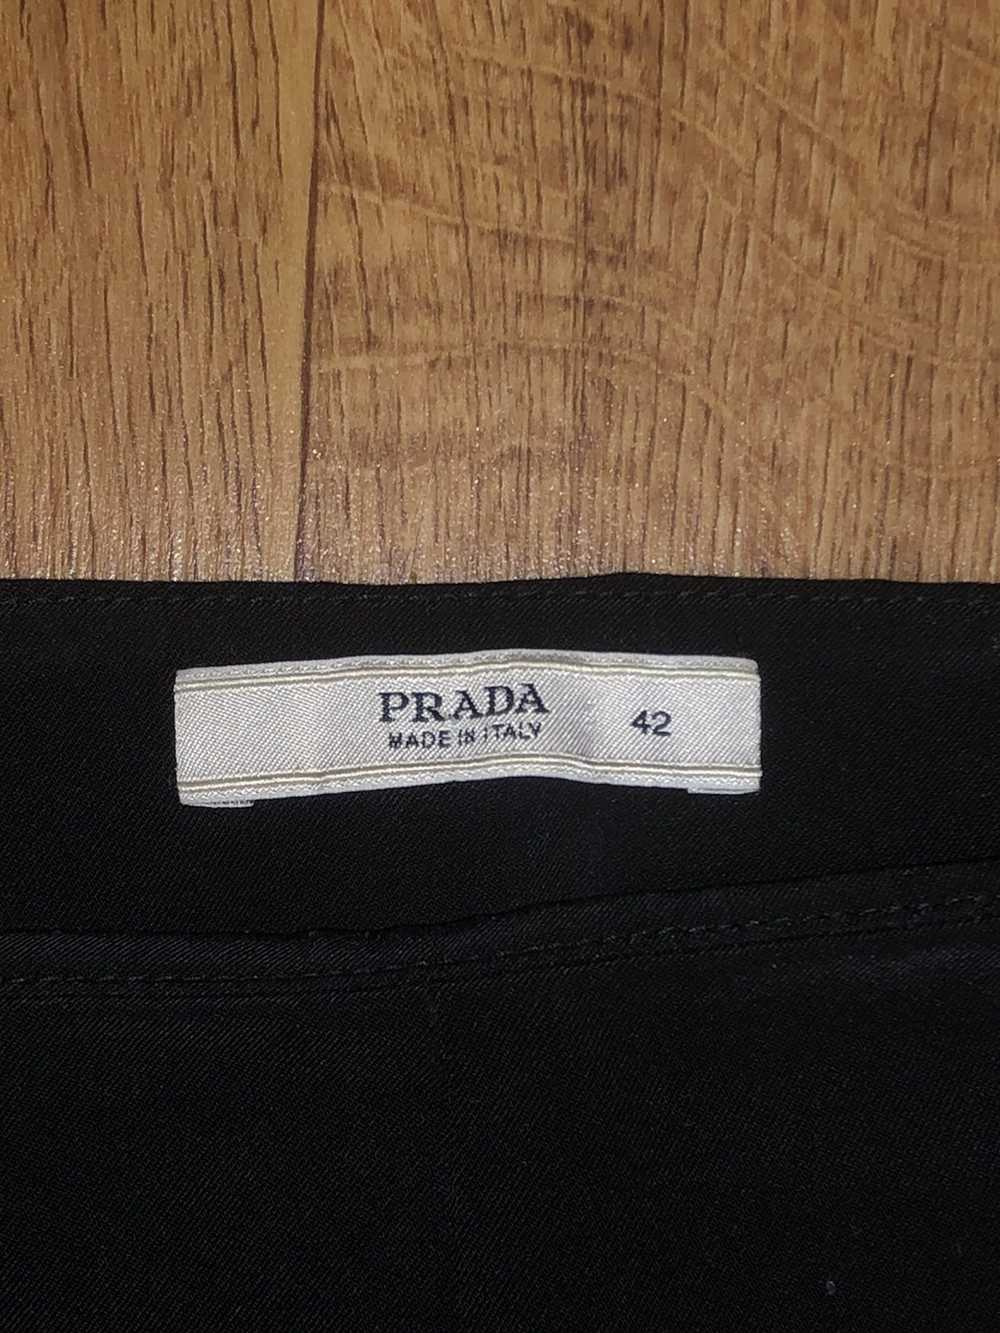 Prada Prada suit pants - image 2